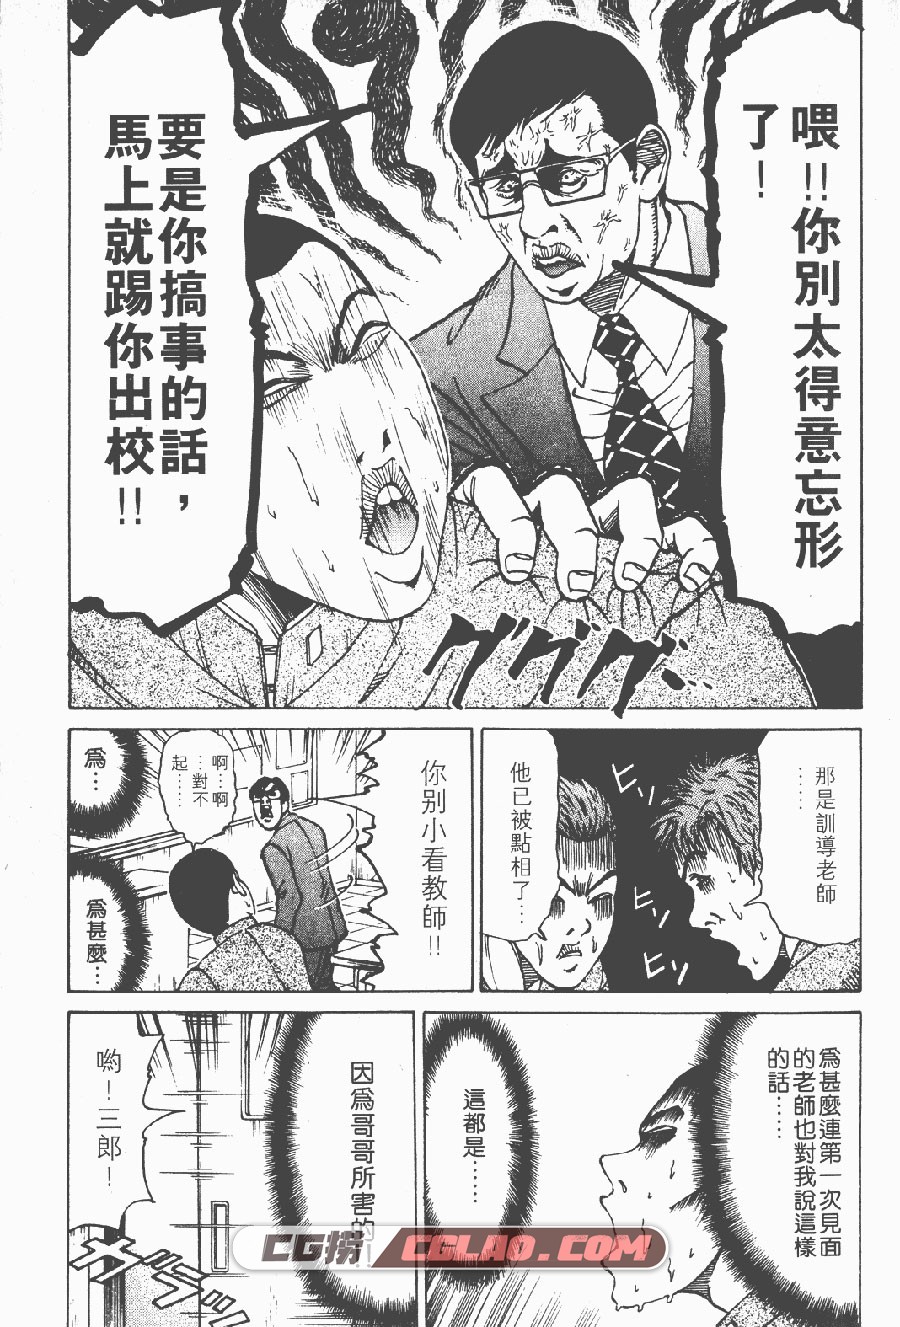 史上最不幸的大佬三郎 阿部秀司 1-26卷 漫画完结下载 百度云,T01_004.jpg